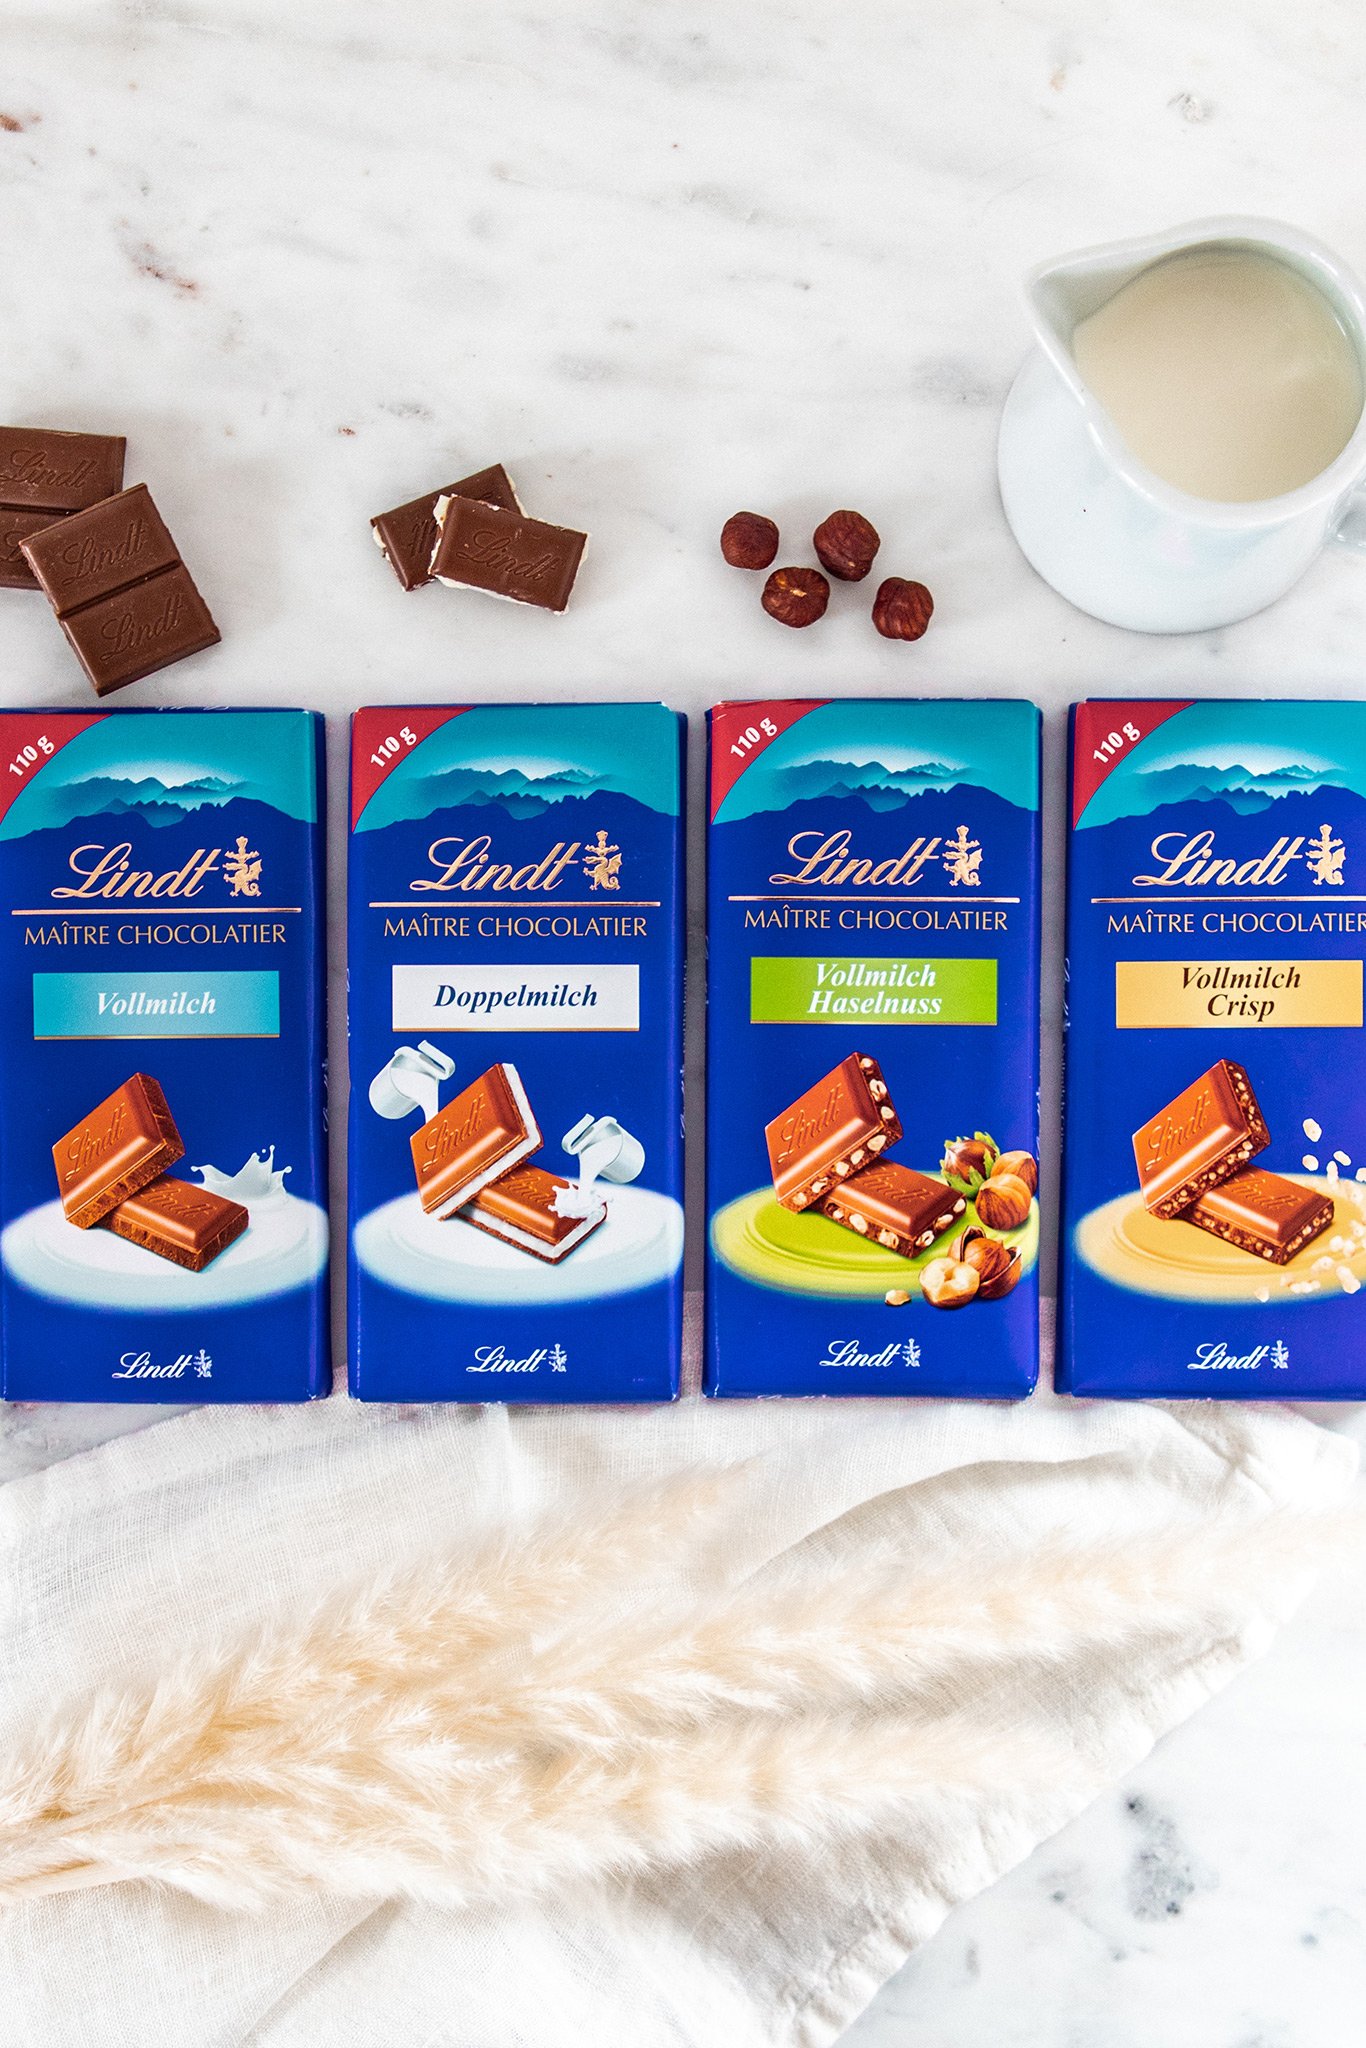 Produkttester:innen gesucht: Testen Sie die neuen Maître Chocolatier Tafeln  von Lindt - Falstaff